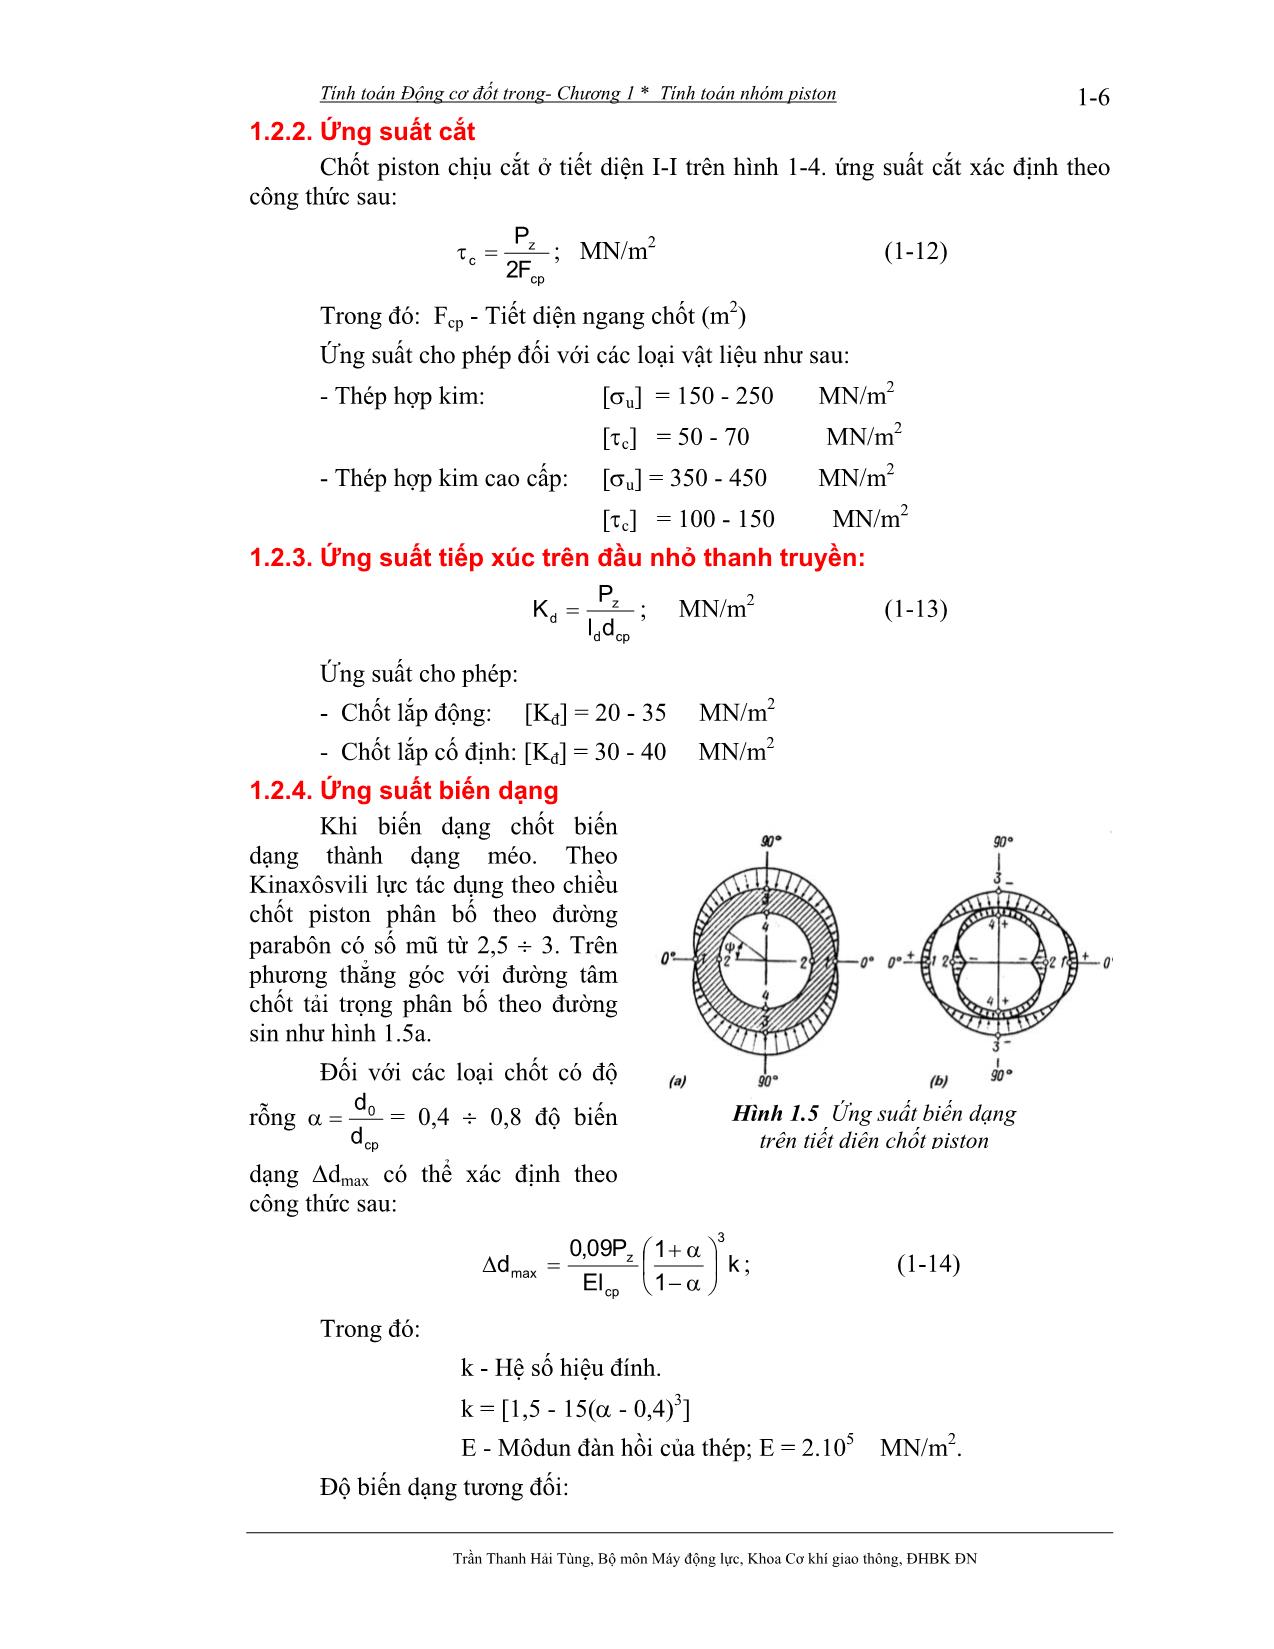 Bài giảng Tính toán thiết kế động cơ đốt trong - Trần Thanh Hải Tùng trang 7